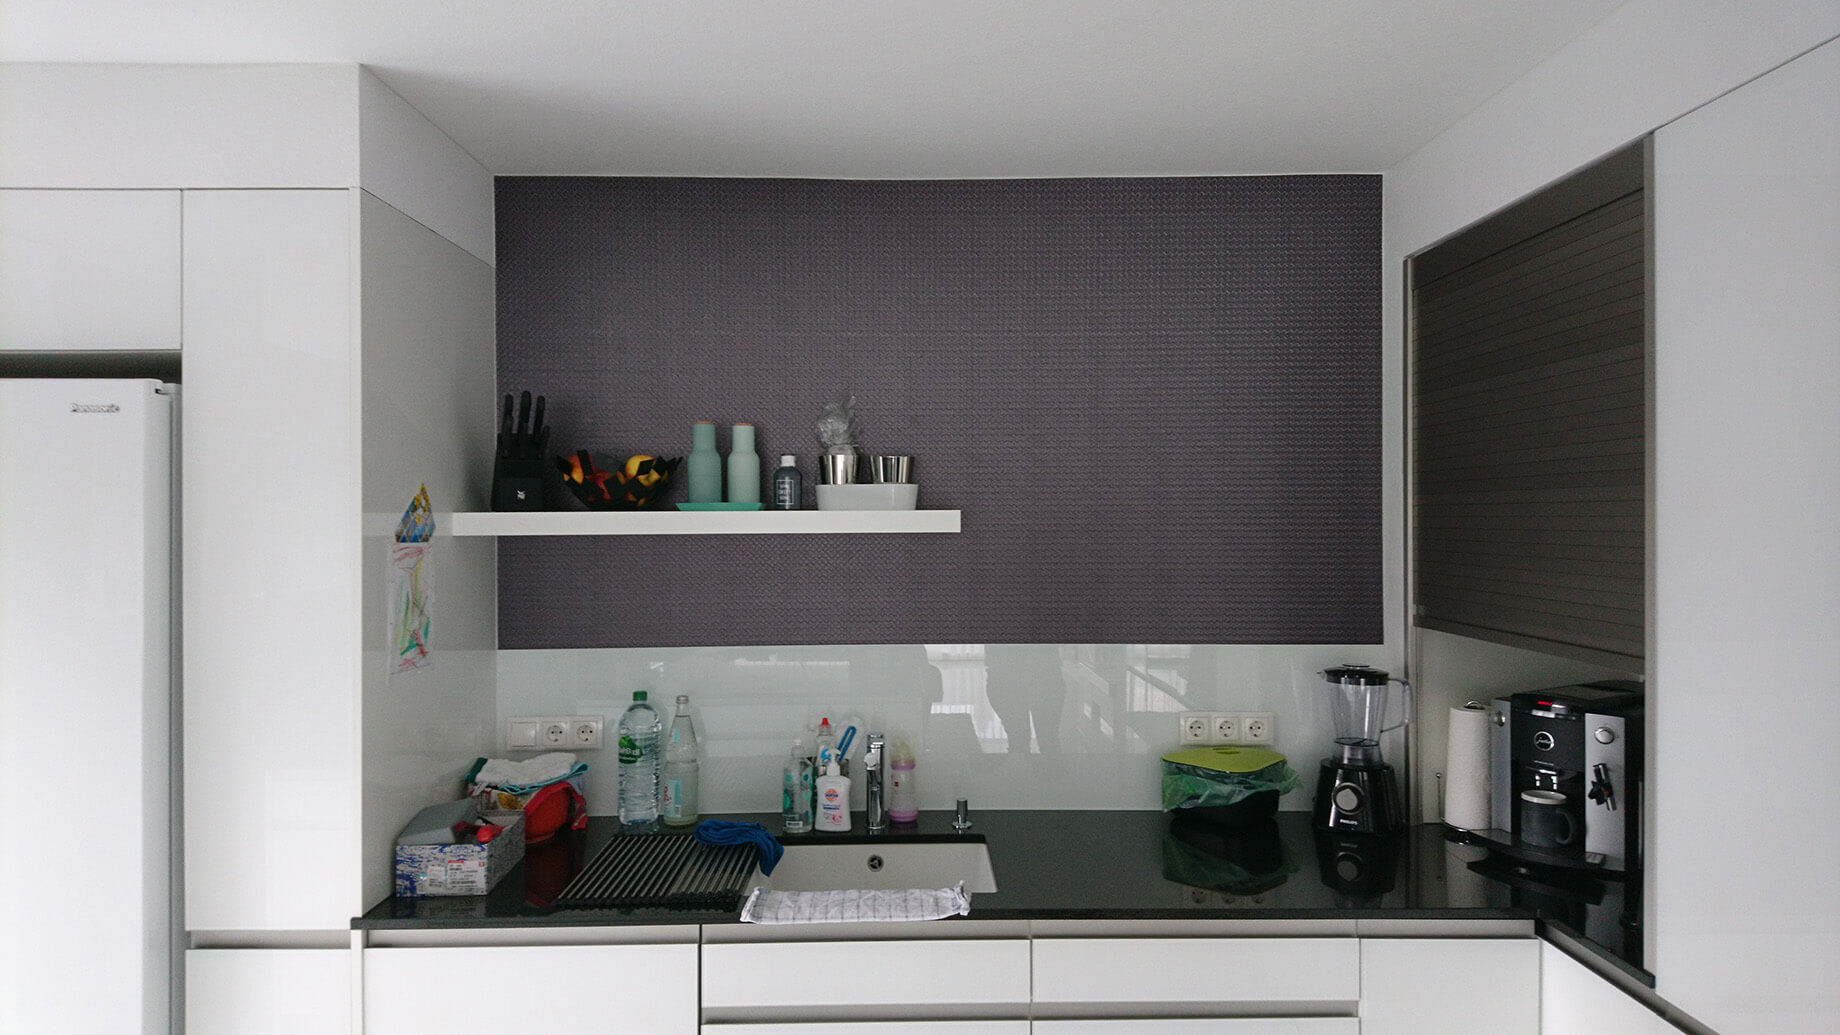 Spritzschutz an der Küchenrückwand selbstklebende Folie Kueche Wand dunkellila AR659 08